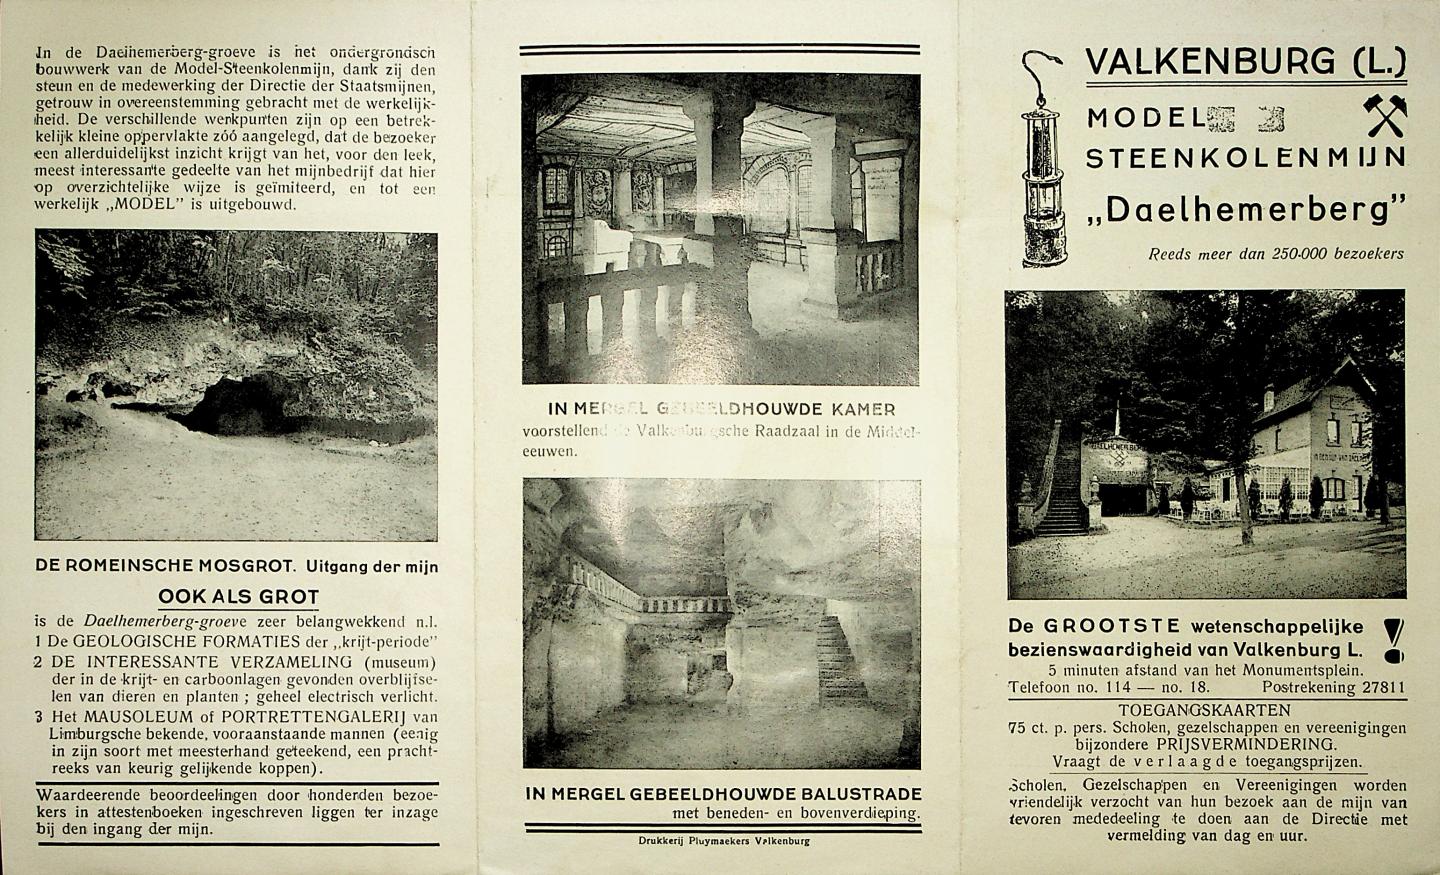  - Valkenburg (L) : Model-Steenkolenmijn "Daelhemerberg" : Reeds meer dan 250.000 bezoekers